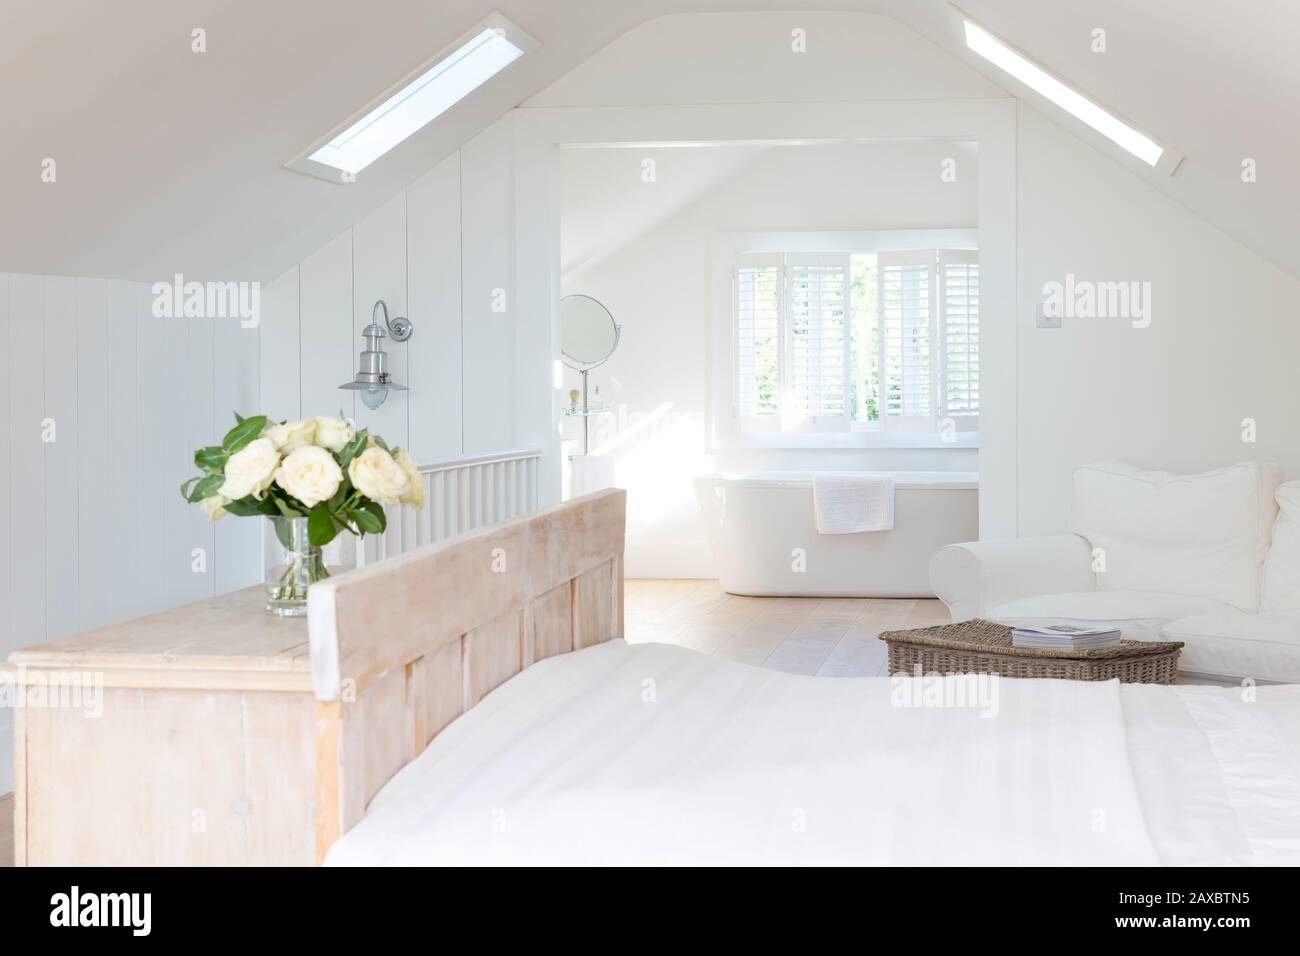 Cette maison à cadre blanc présente une chambre avec salle de bains privative Banque D'Images